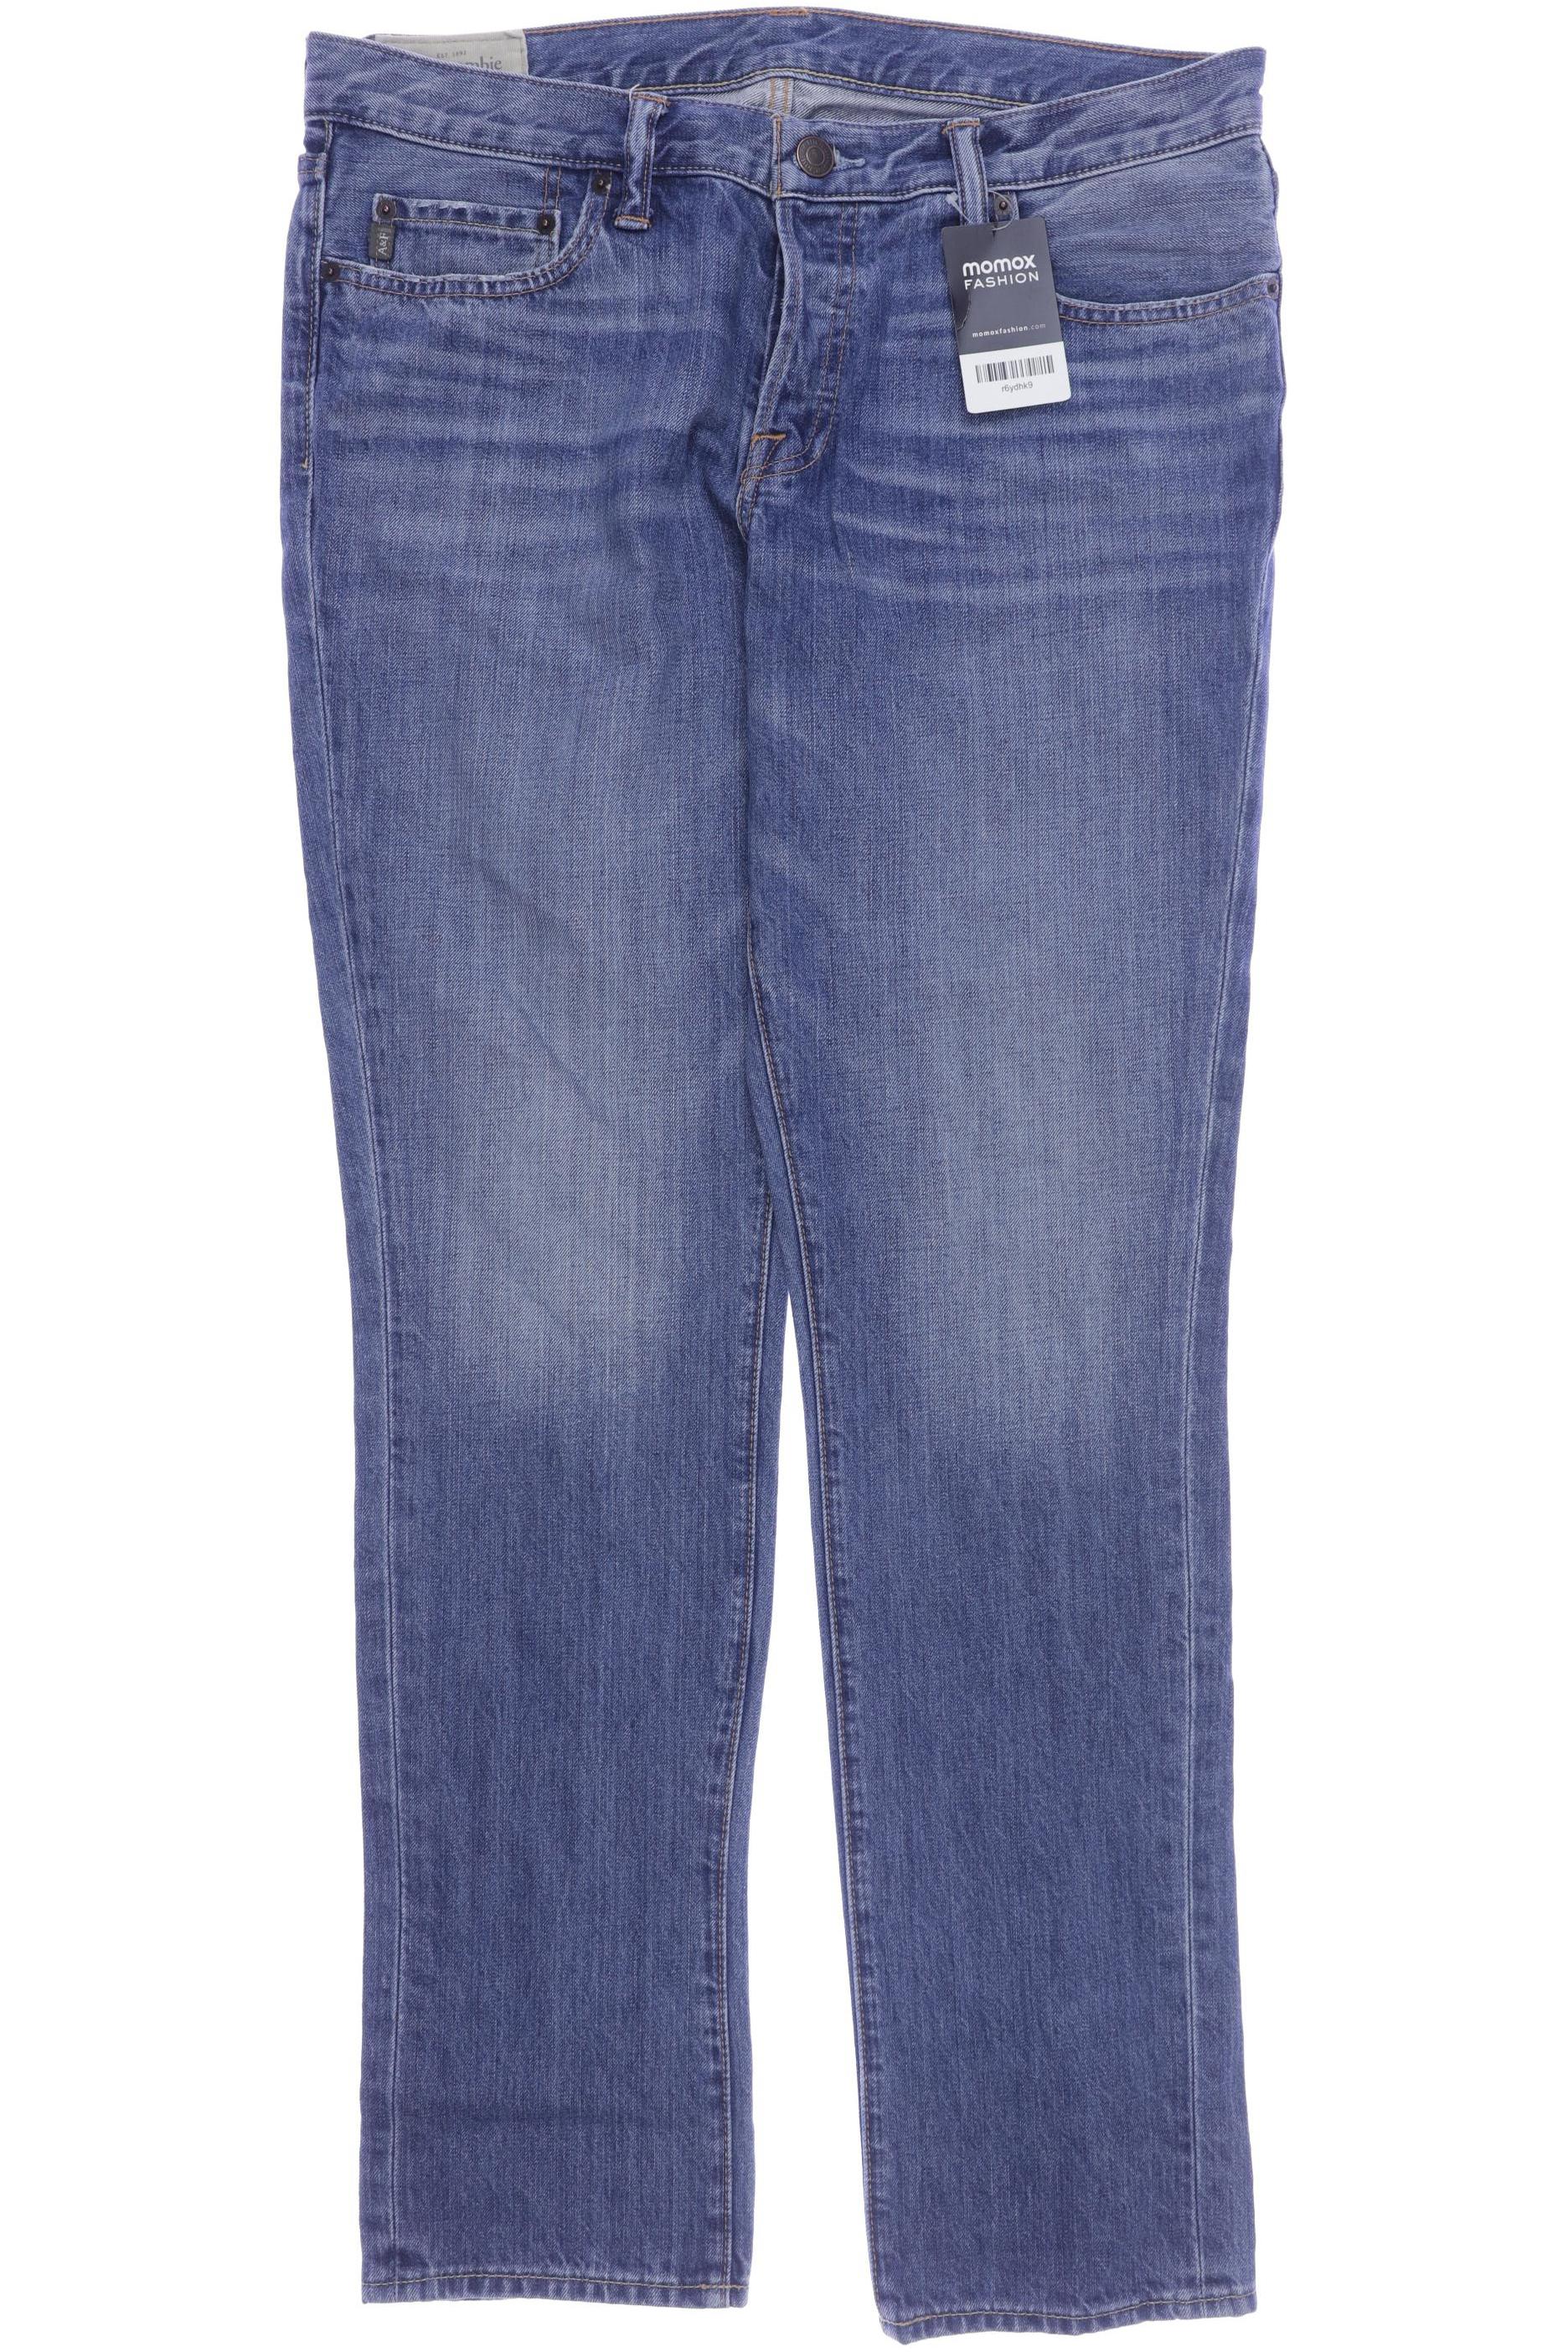 Abercrombie & Fitch Herren Jeans, blau, Gr. 52 von Abercrombie & Fitch